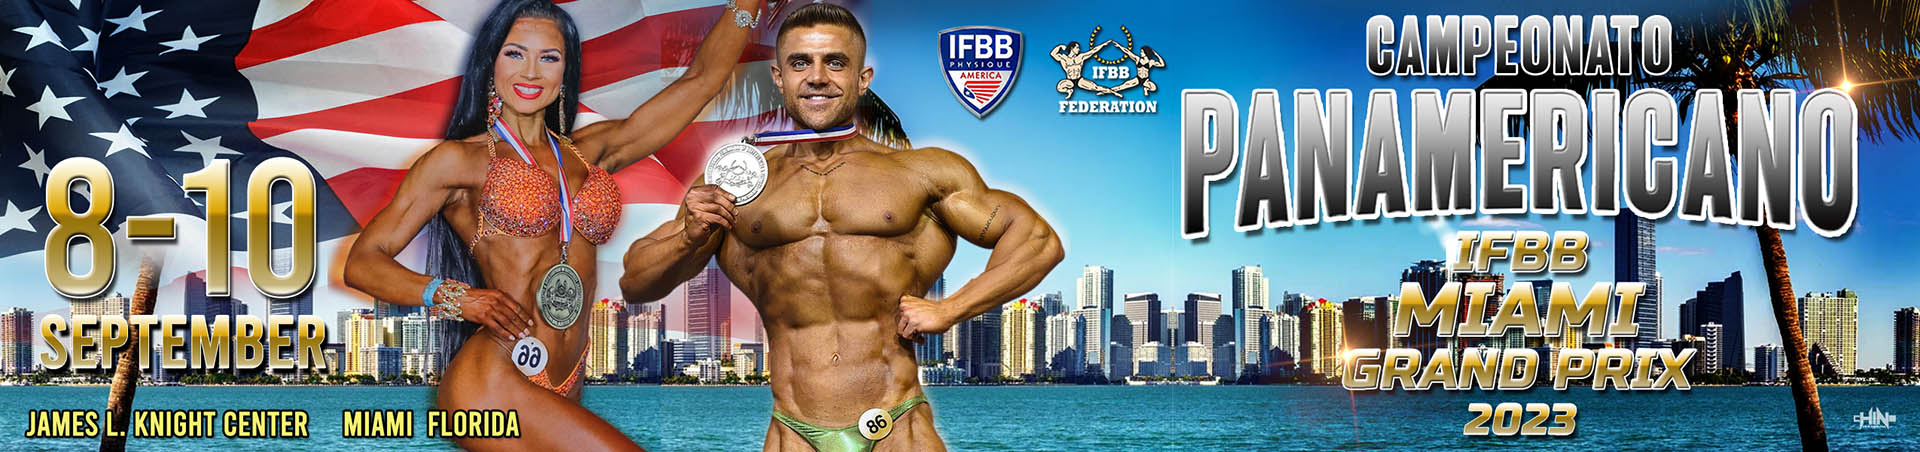 CAMPEONATO PANAMERICANO – IFBB Miami Grand CAMPEONATO PANAMERICANO – IFBB Miami Grand Prix